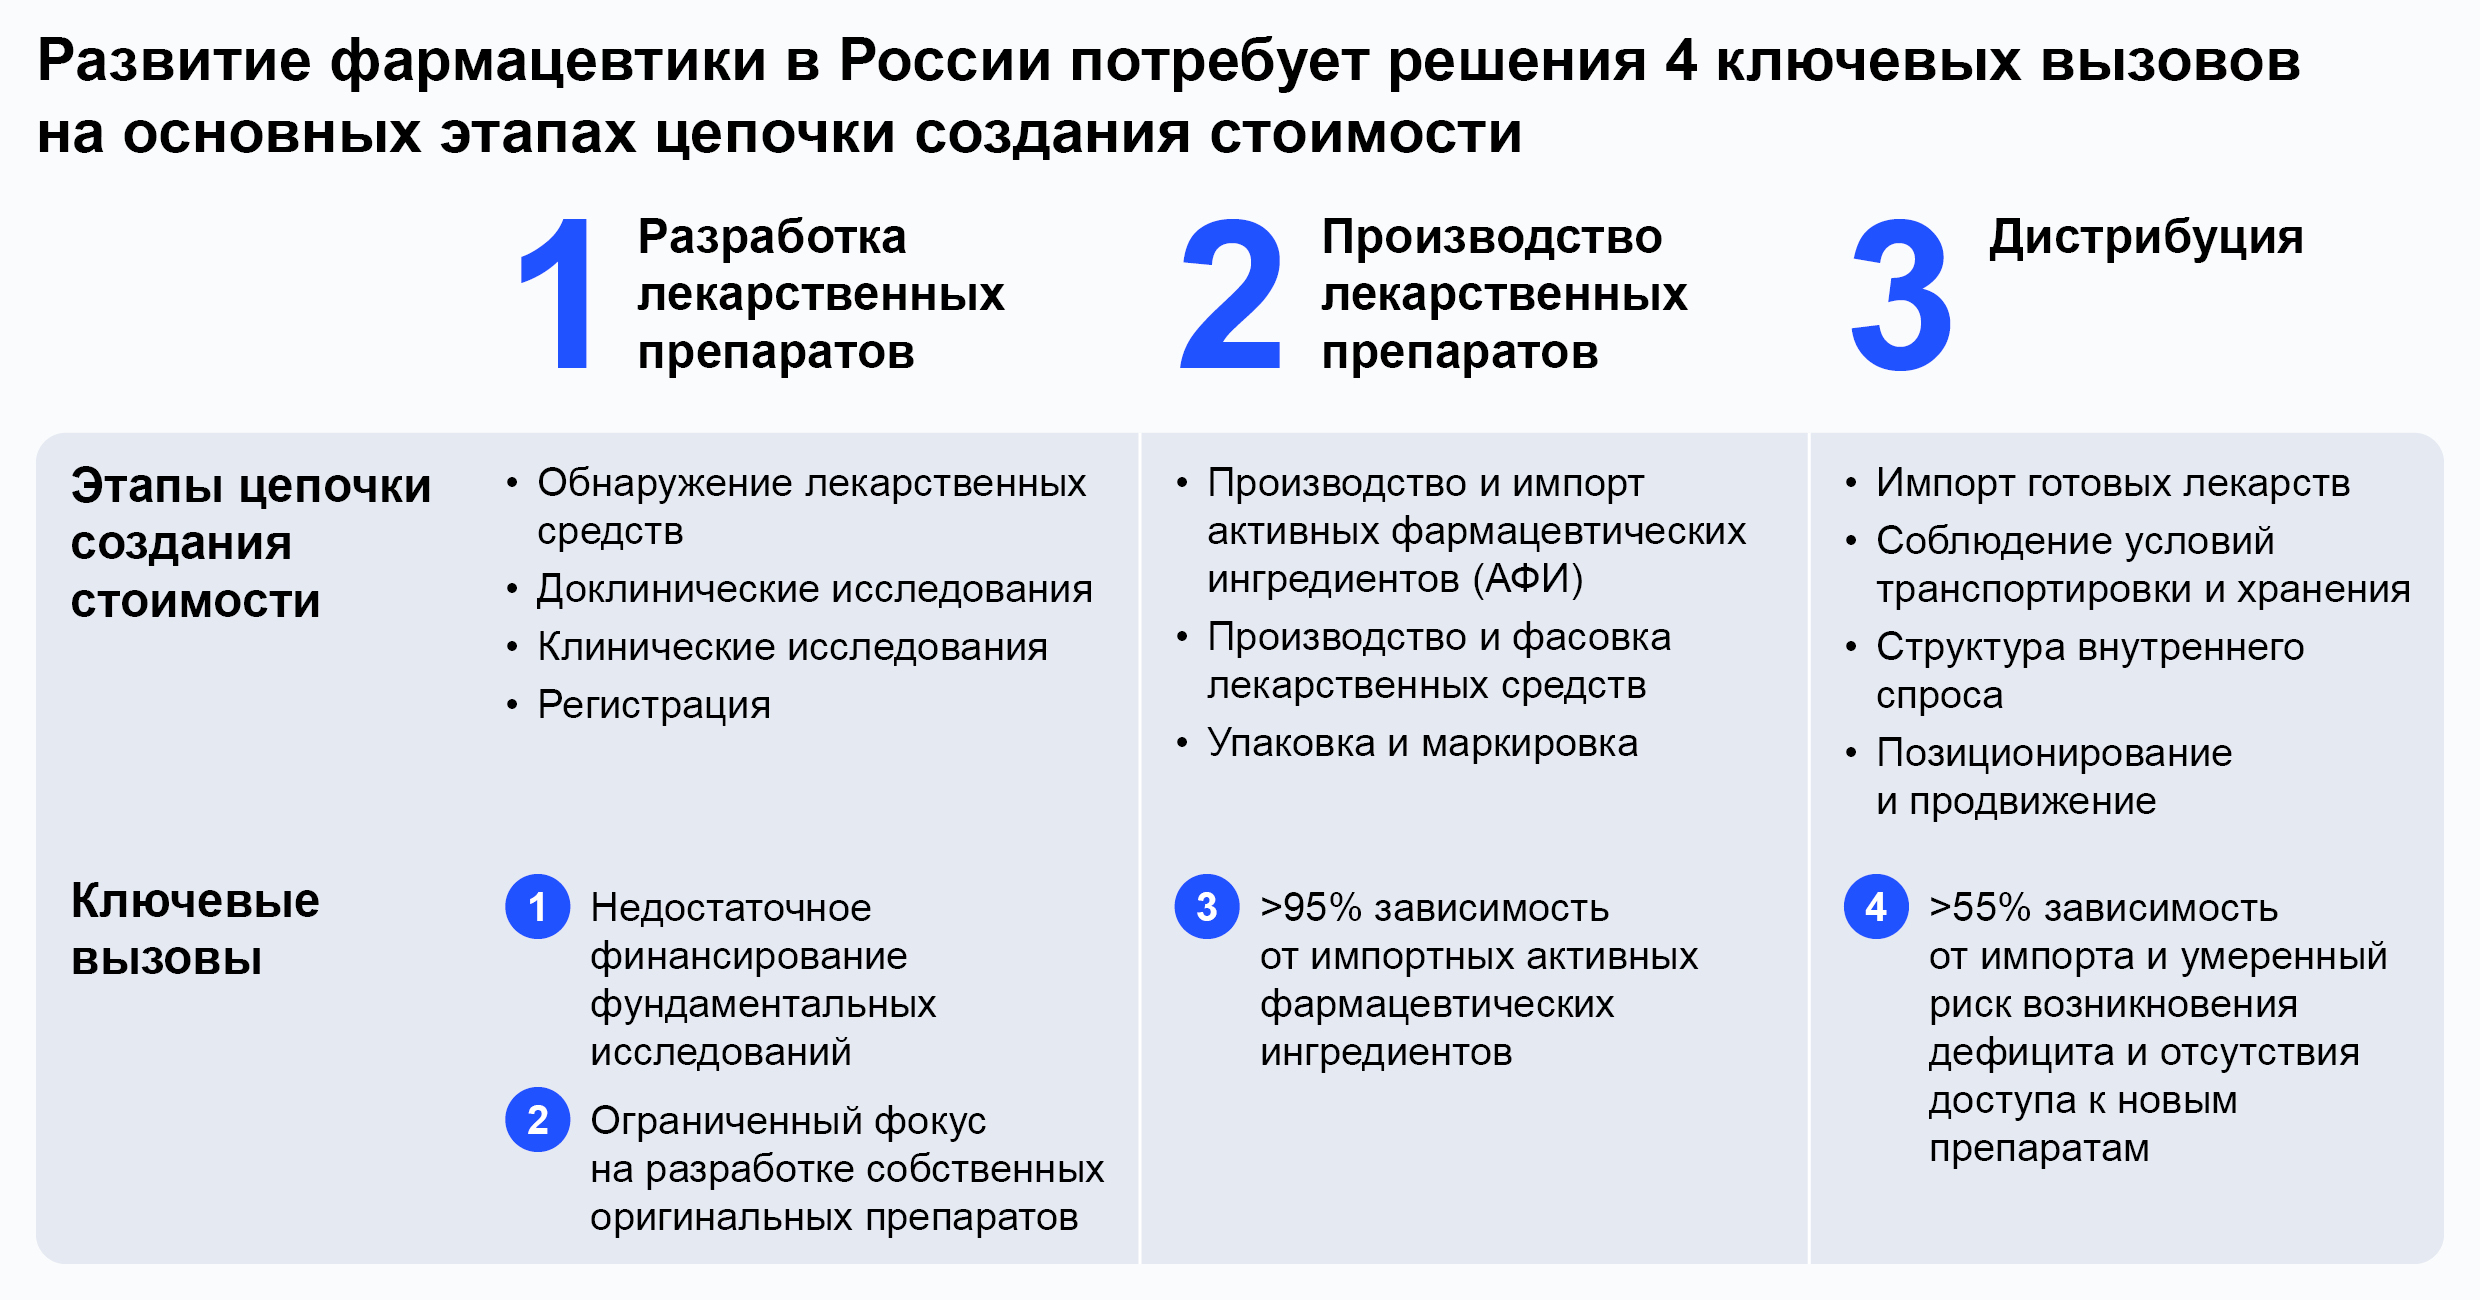 Развитие фармацевтики в России потребует решения 4 ключевых вызовов на основных этапах цепочки создания стоимости